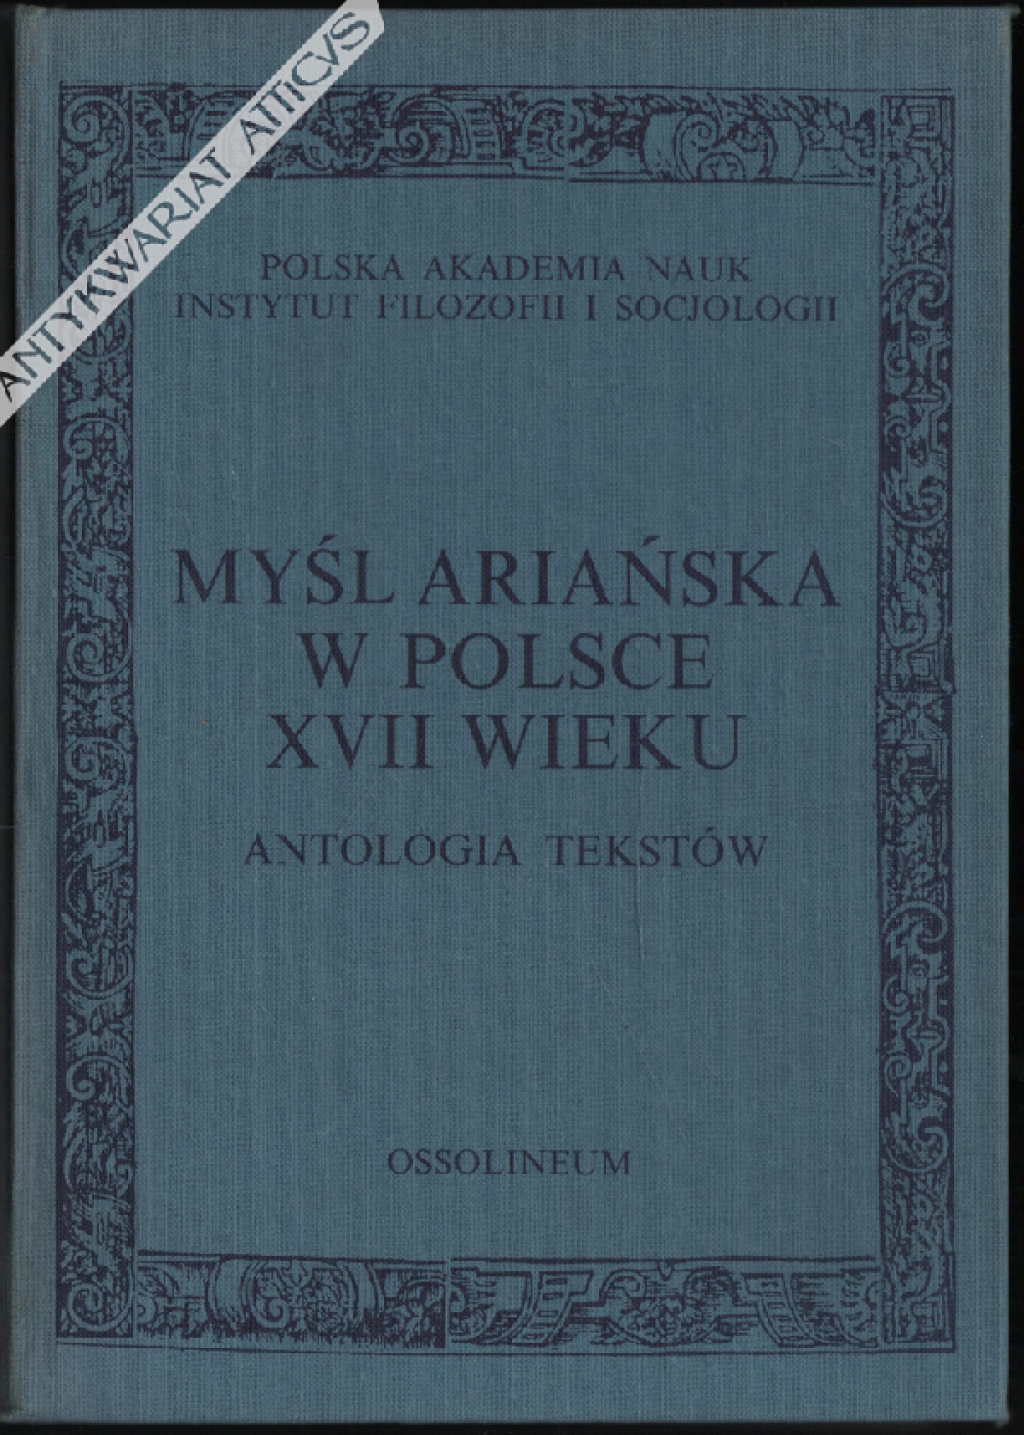 Myśl ariańska w Polsce XVII wieku. Antologia tekstów